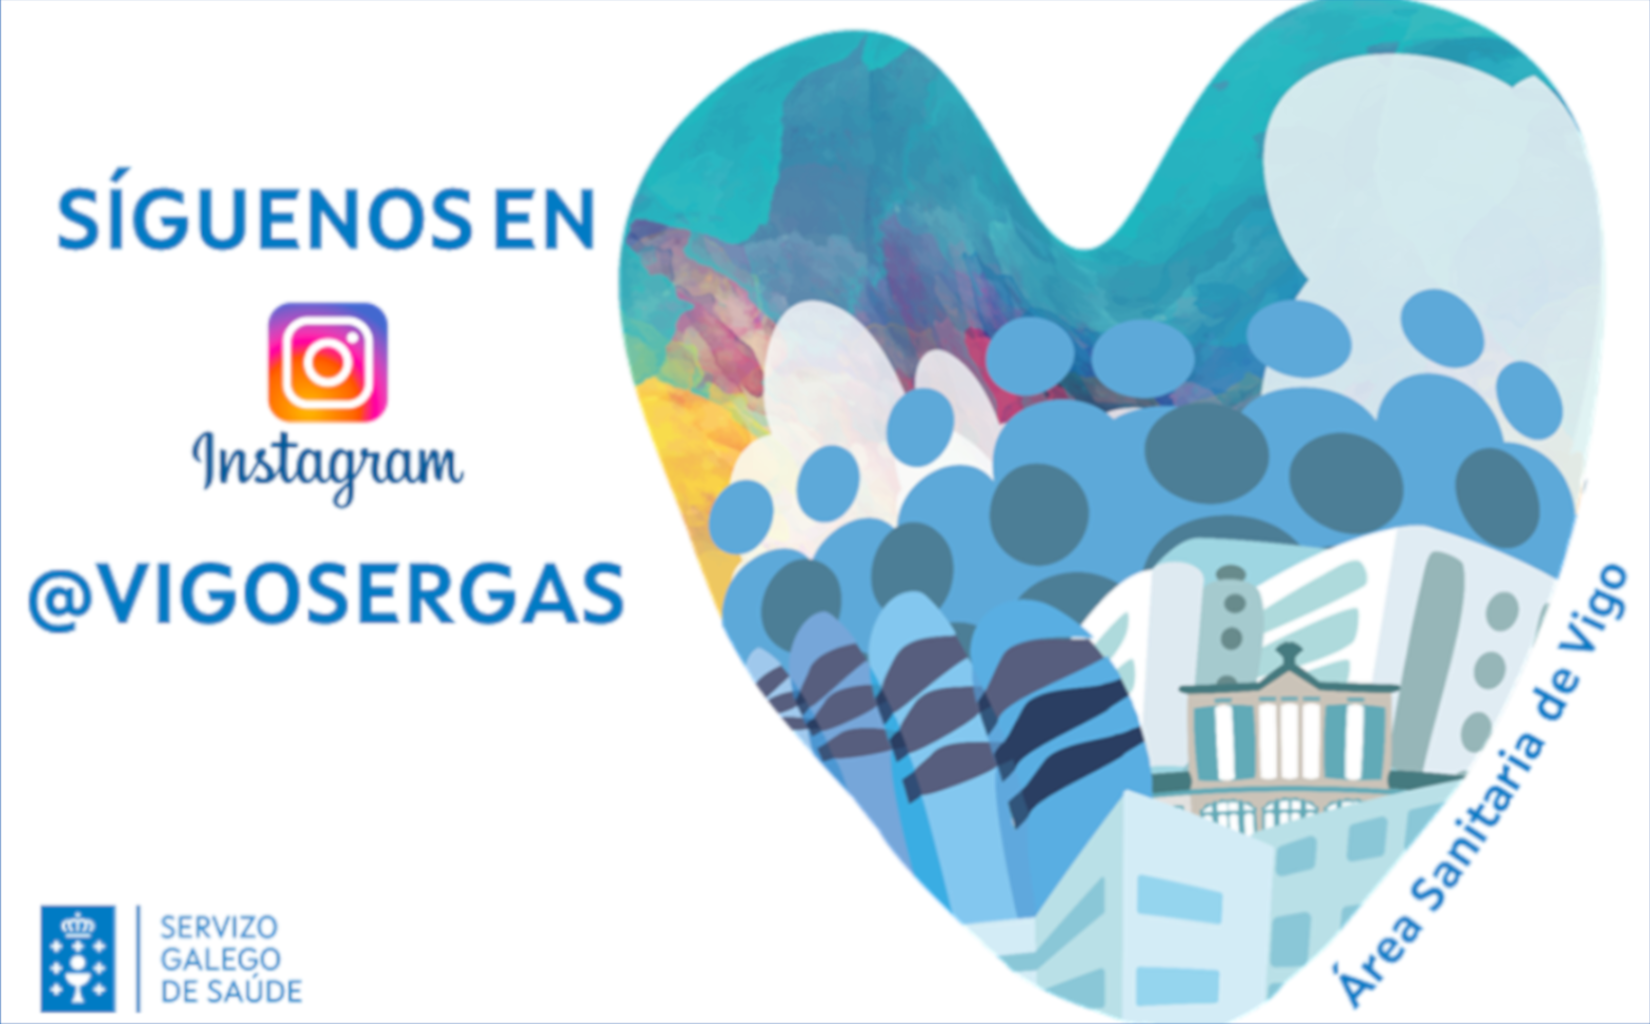 Instagram: @VIGOSERGAS